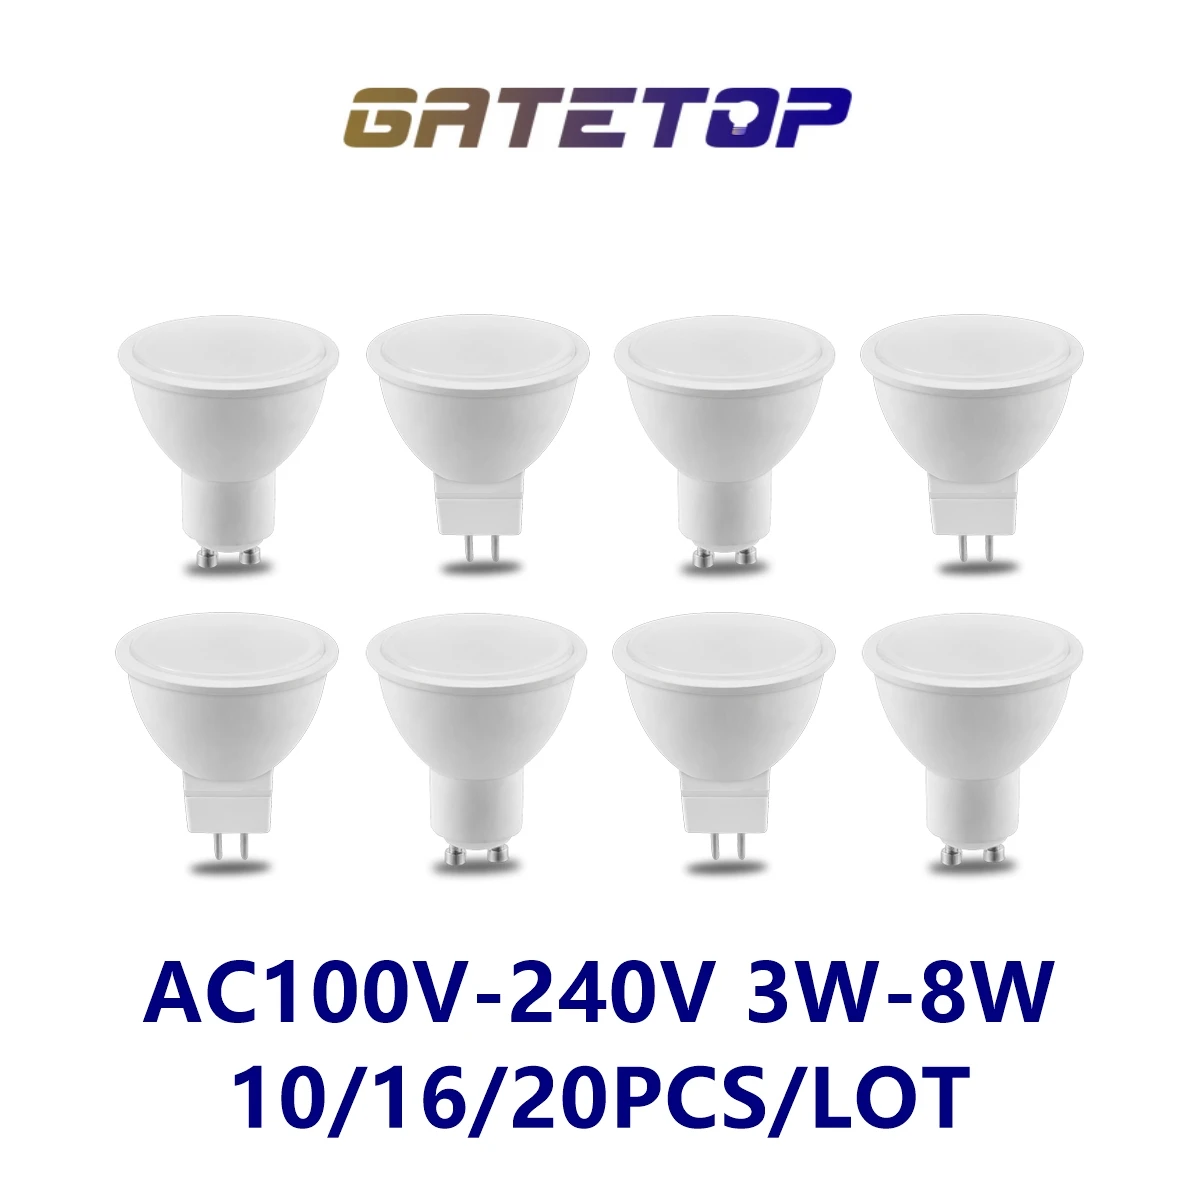 Factory direct LED spot light MR16 GU10  110V 220V 3W-8W 3000K-6000K is suitable for study kitchen instead of 100W halogen lamp